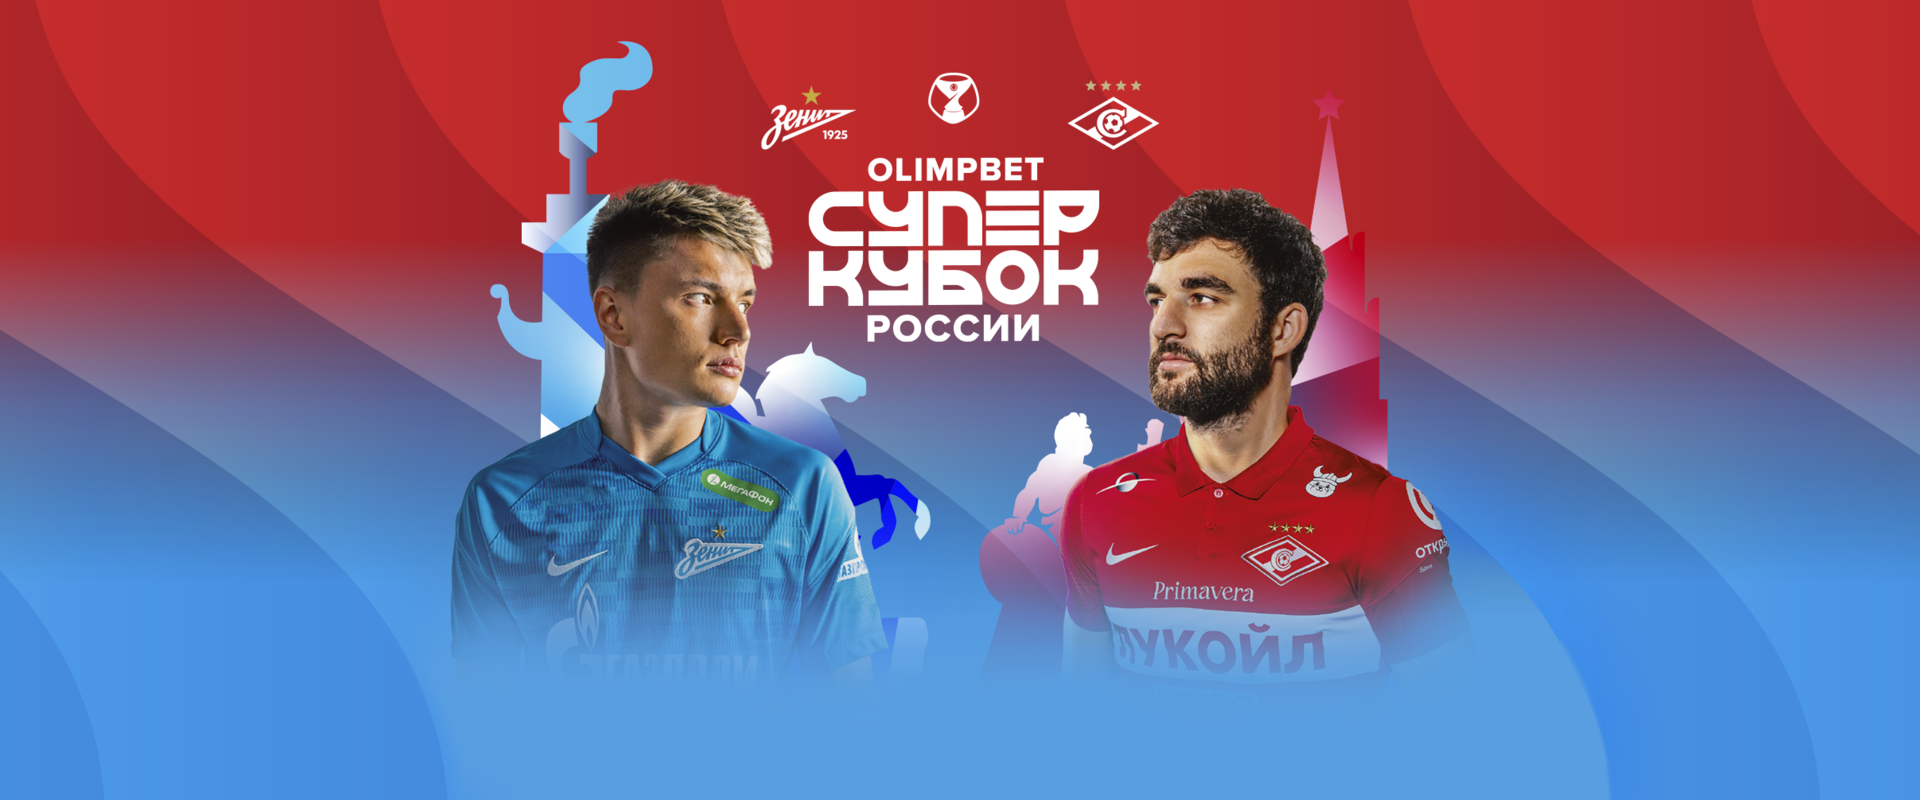 Стартовала свободная продажа билетов на матч OLIMPBET Суперкубка России 